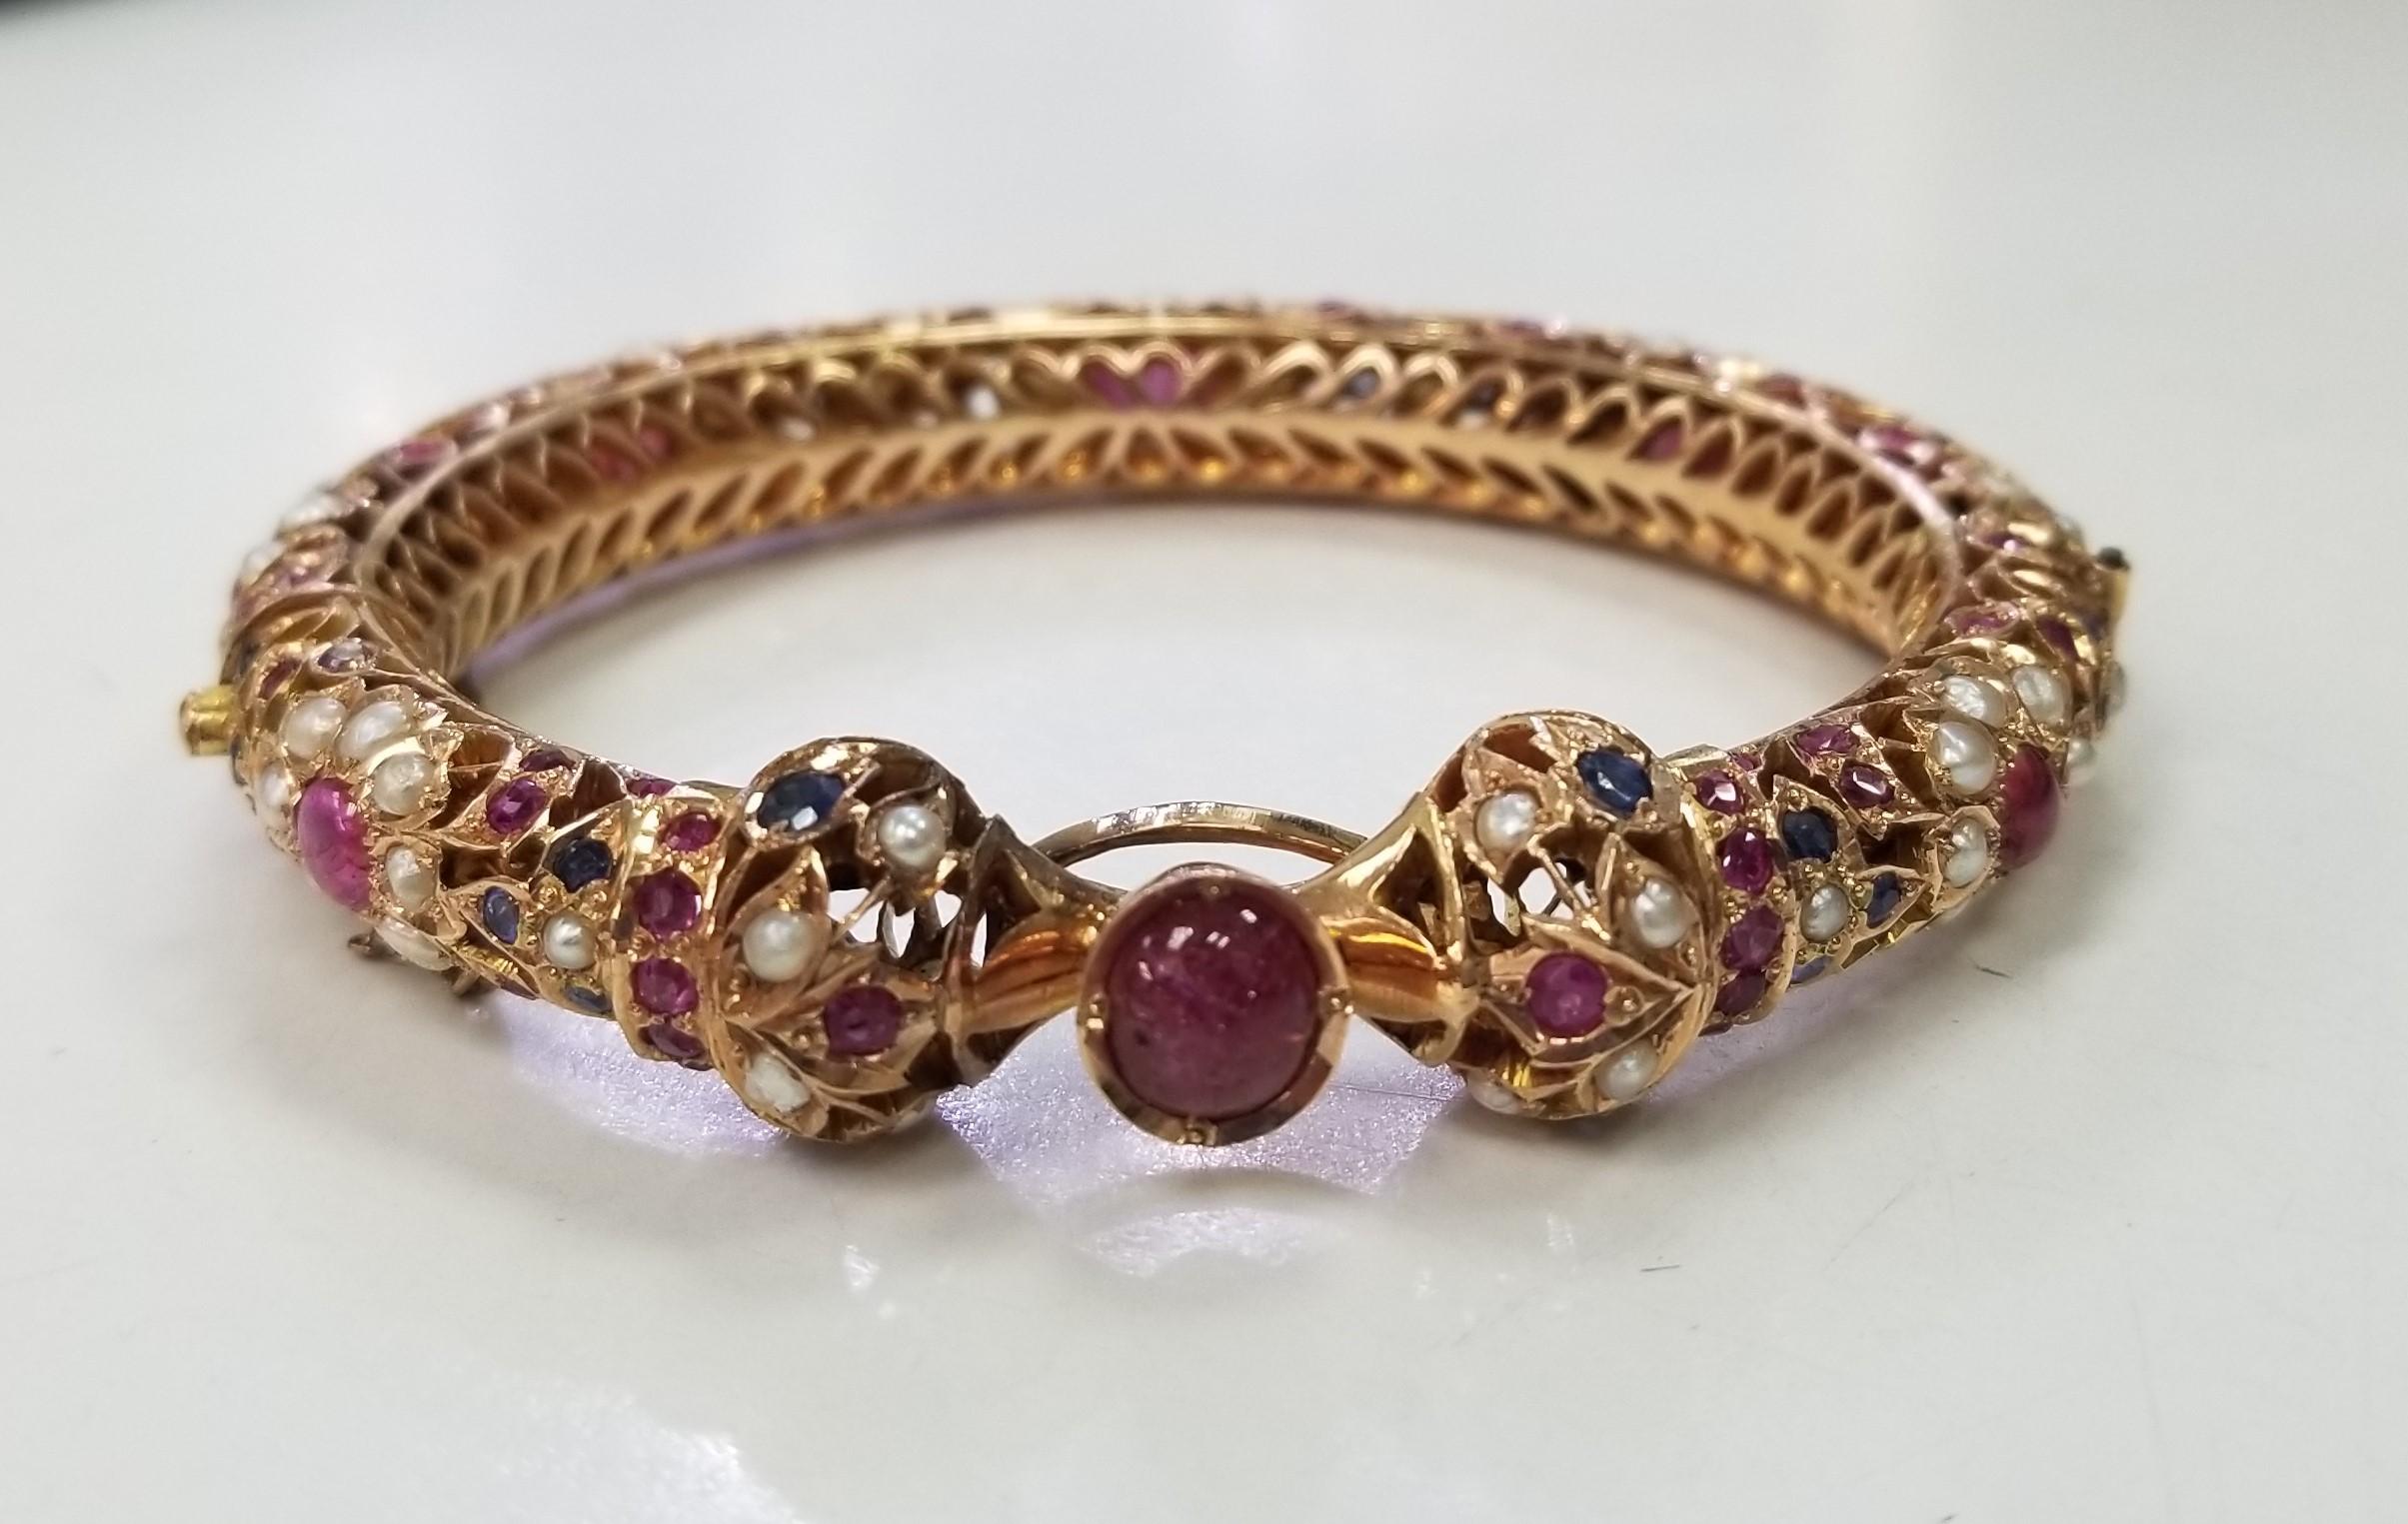 Dieses exquisite Armband besticht durch sein filigranes Design aus 14-karätigem Gold, das mit schillernden Rubinen, Saphiren und Perlen verziert ist. Mit ihrer aufwändigen und detaillierten Verarbeitung ist sie die perfekte Wahl für eine formelle